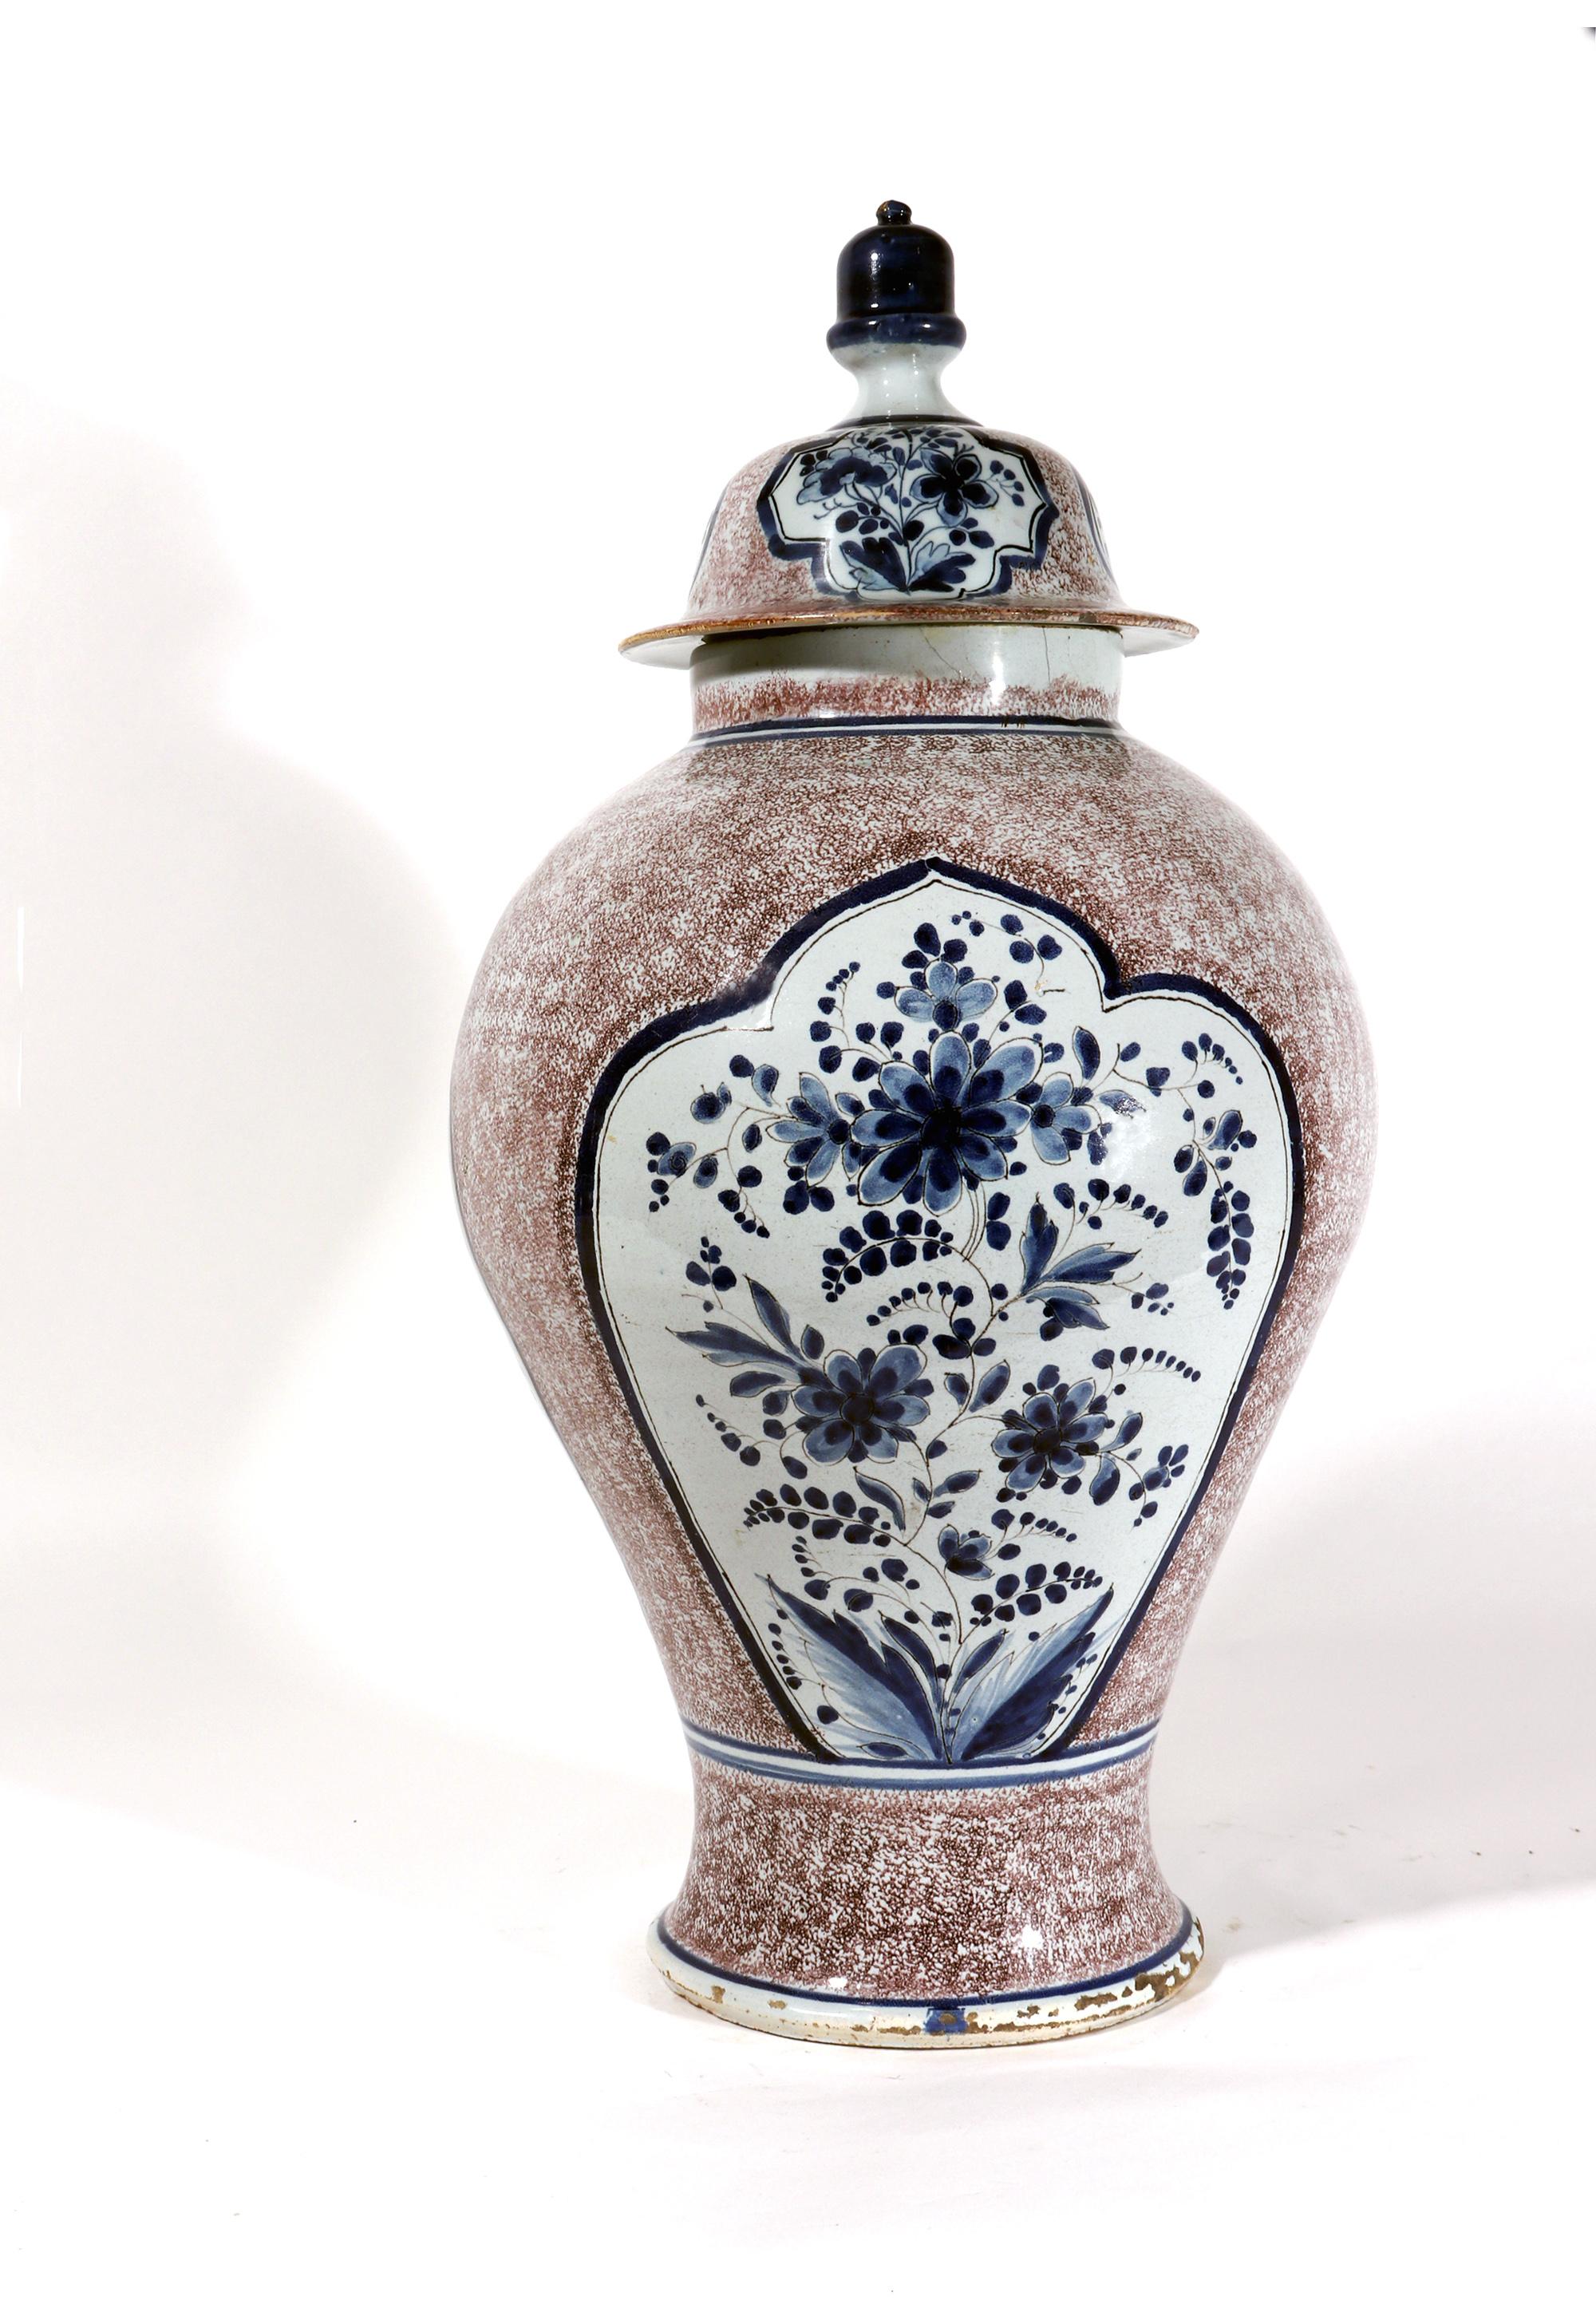 Massif vase et couvercle en faïence allemande manganèse en poudre et bleu,
Milieu du 18e siècle,

Le vase en faïence allemande à fond manganèse, de forme balustre, présente une large épaule avec des côtés inclinés se rétrécissant vers un pied